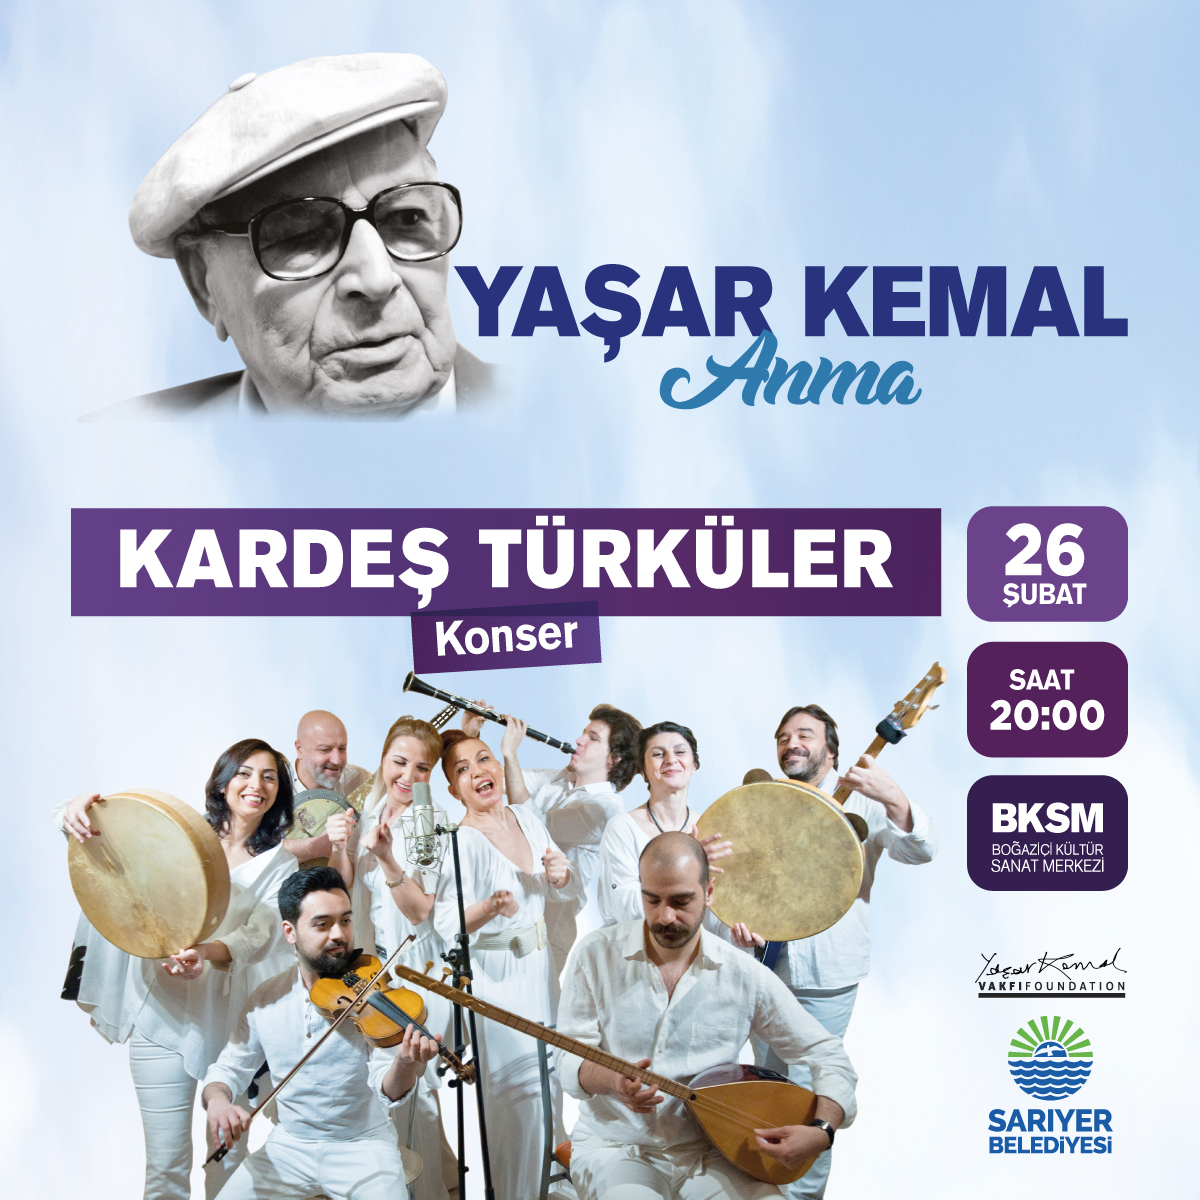 Kardeş Türküler Konseri Ücretsiz